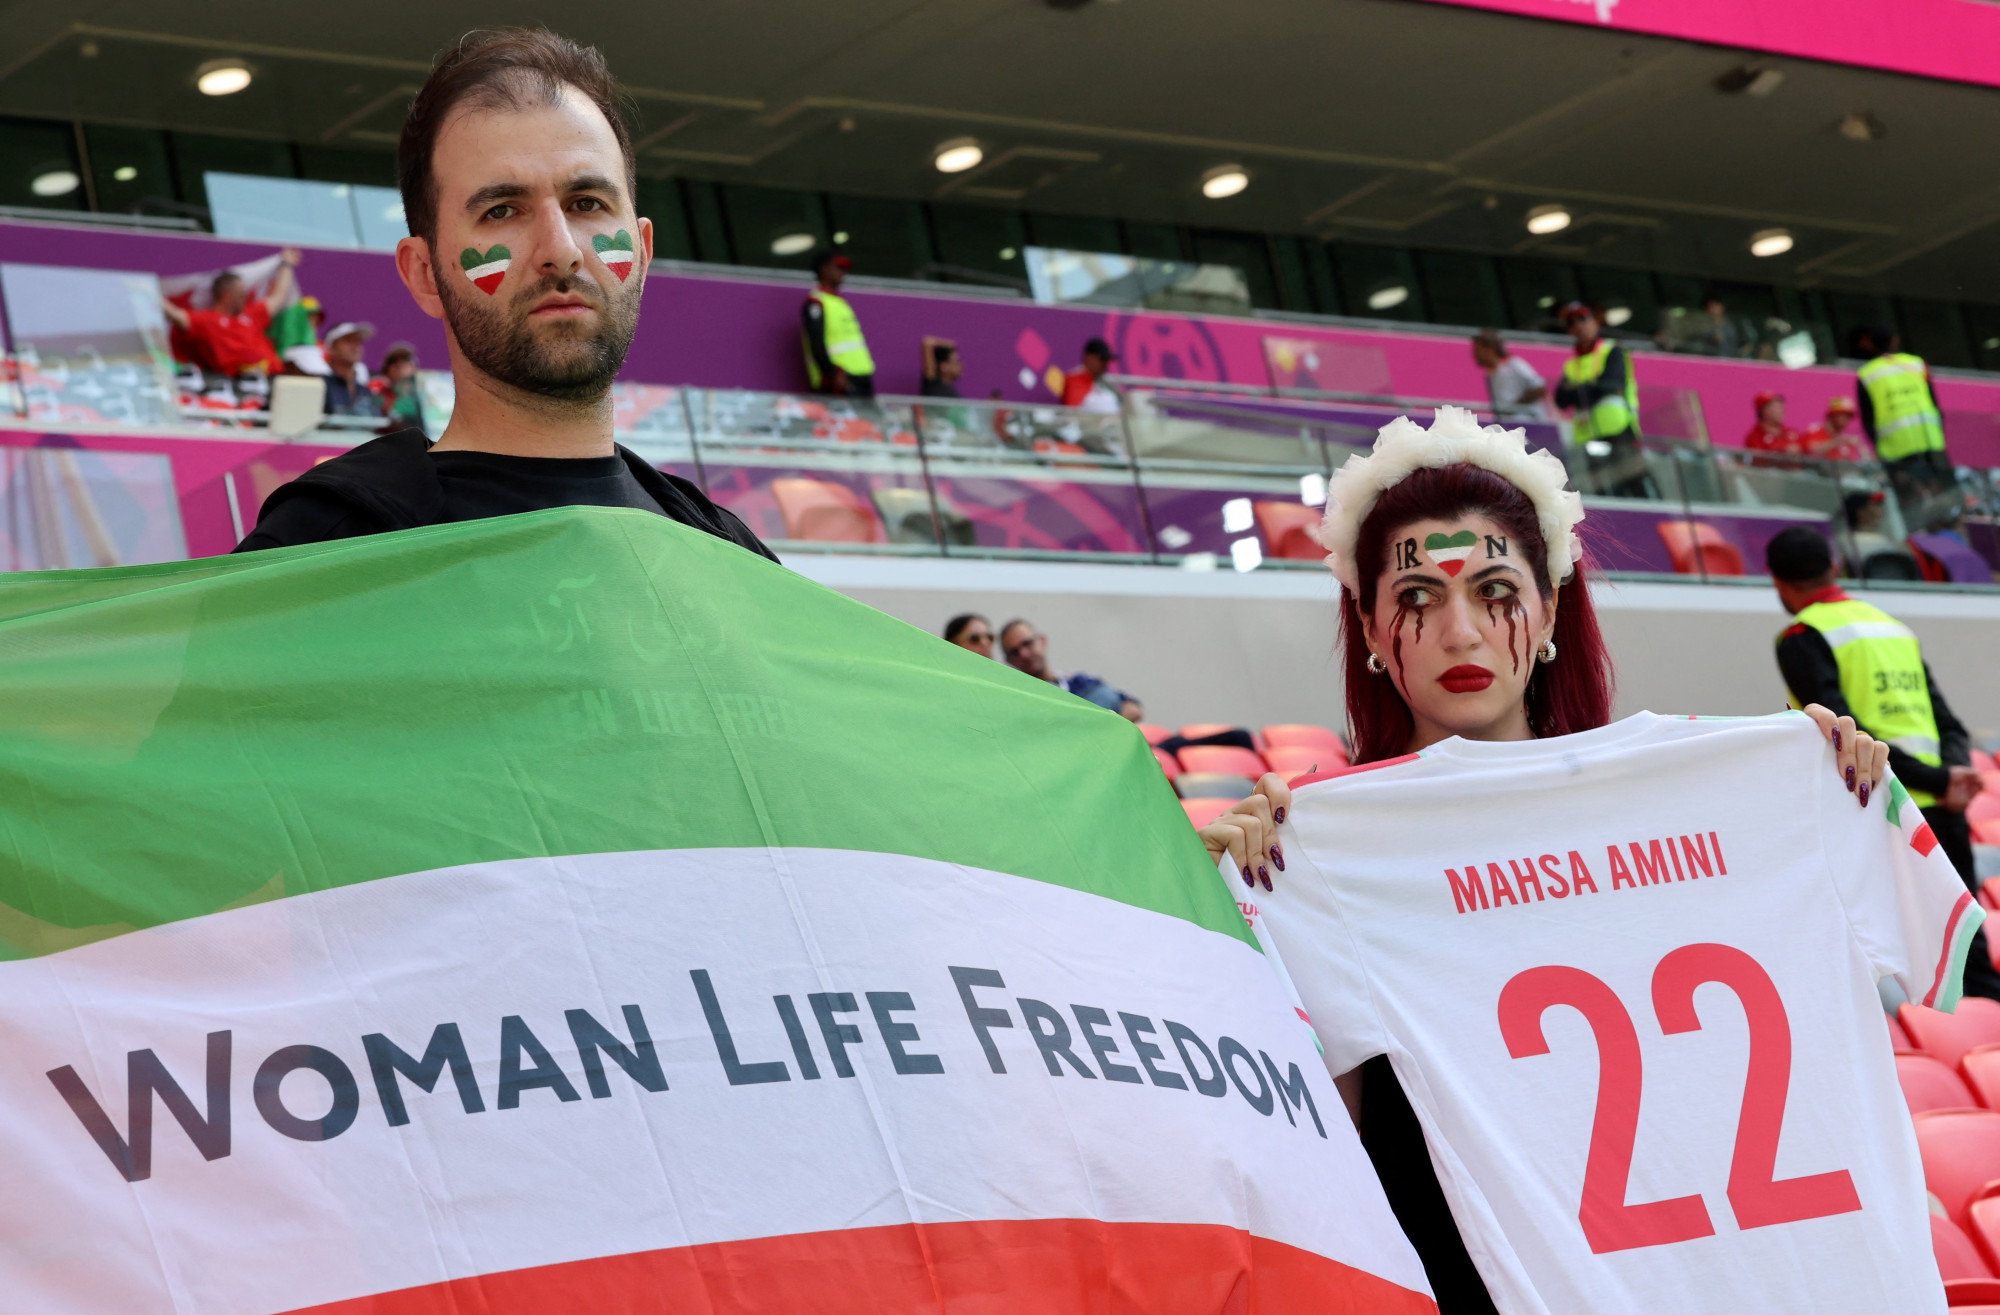 Két rezsimellenes iráni szurkoló az Ahmad Bin Ali Stadionban Irán Wales elleni meccse előtt. Balra a férfi a tüntetések szlogenjével - Nő, Élet, Szabadság - díszített zászlót, jobbra a nő a meggyilkolt Mahsza Amini nevével feliratozott iráni focimezt tart fel.